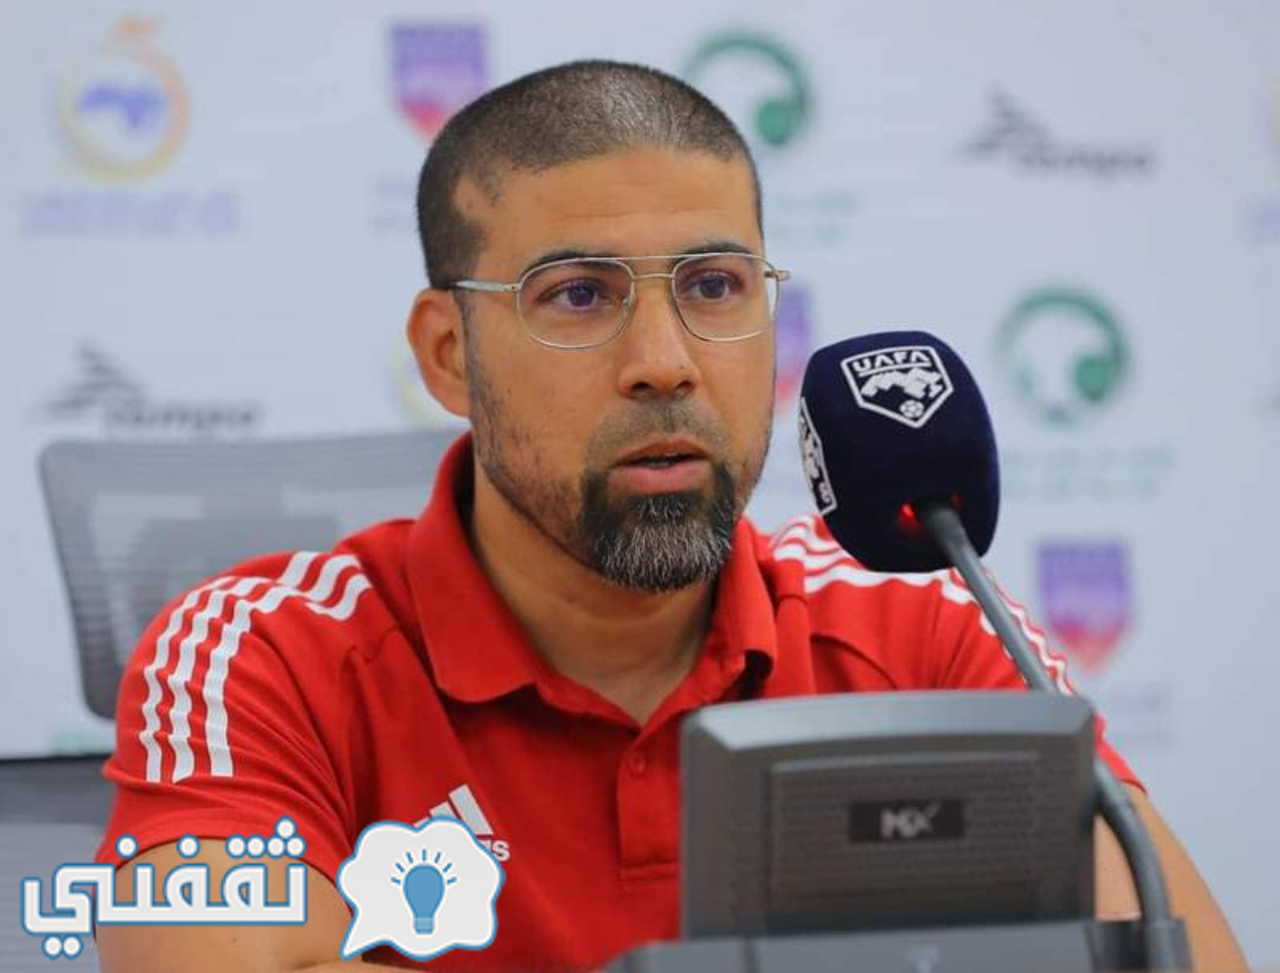 نور الدين بن عمروش مدرب المنتخب الجزائري لكرة القدم للصالات